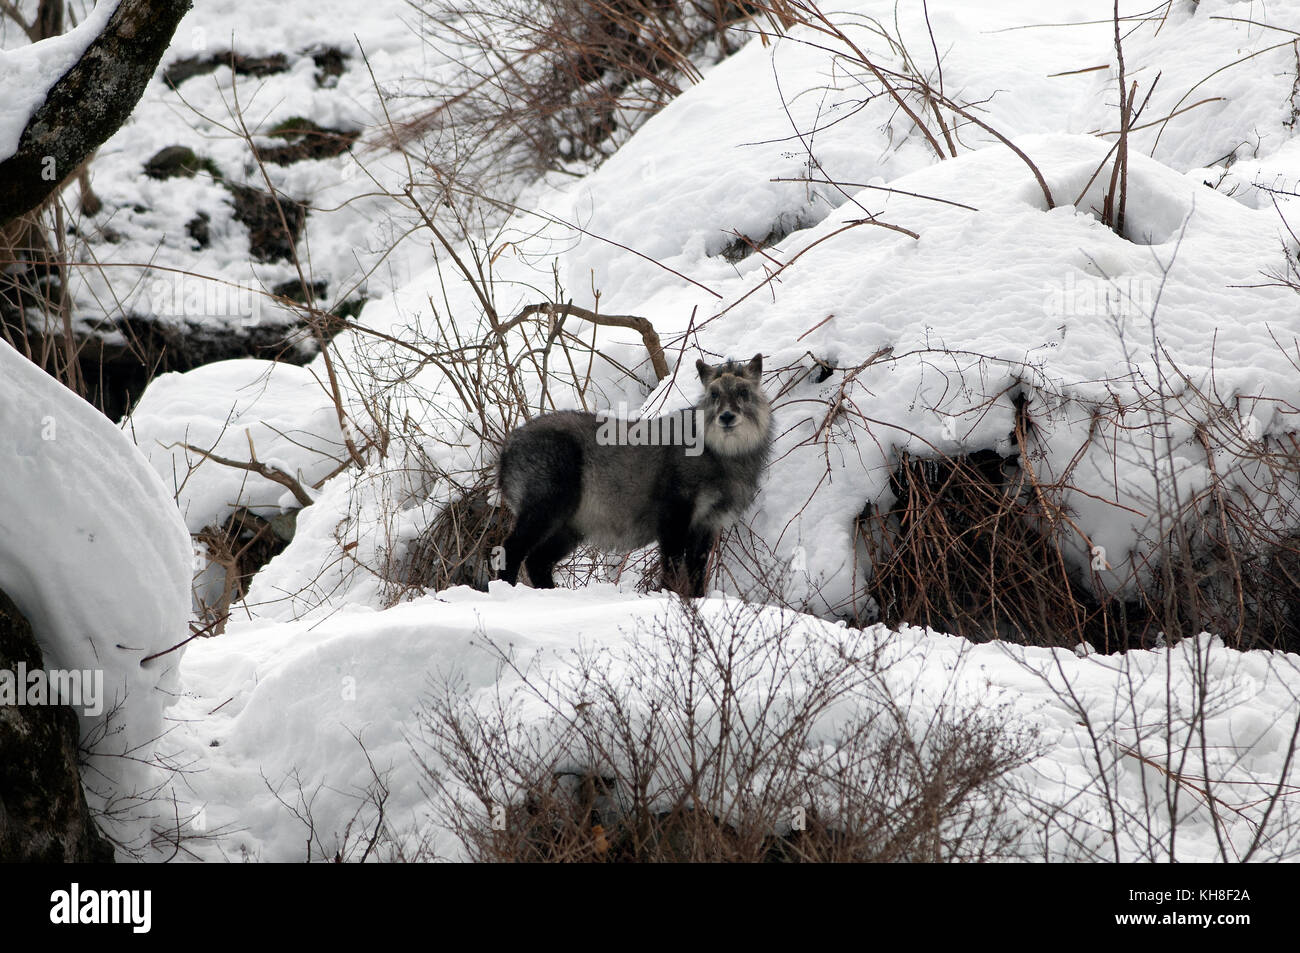 Japanese Serow in winter (Capricornis crispus), Japan *** Local Caption ***  wild animal,wildlife,winter,capricornis crispus,snow Stock Photo